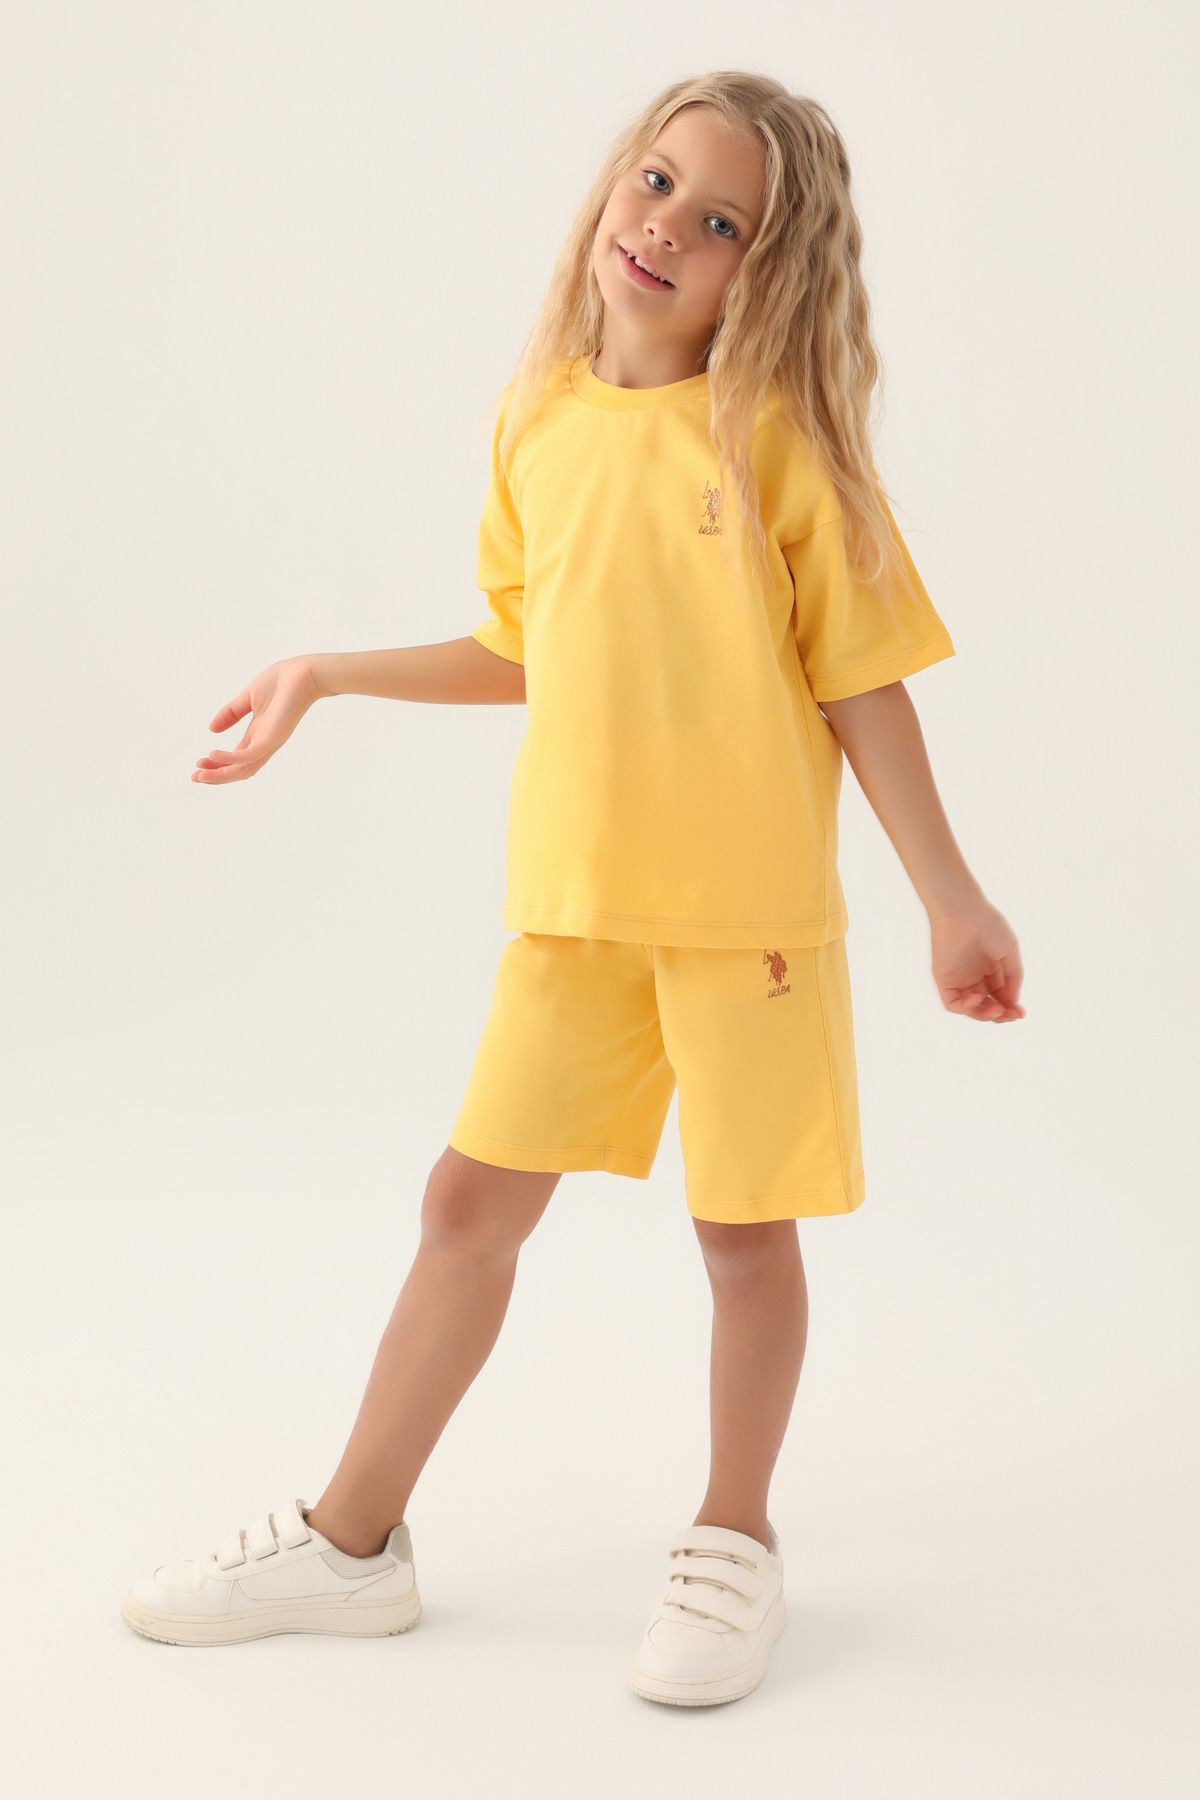 Костюм повседневный детский U.S. POLO Assn. US1822-V1, желтый, 158 костюм повседневный детский u s polo assn us1822 v1 розовая пудра 158